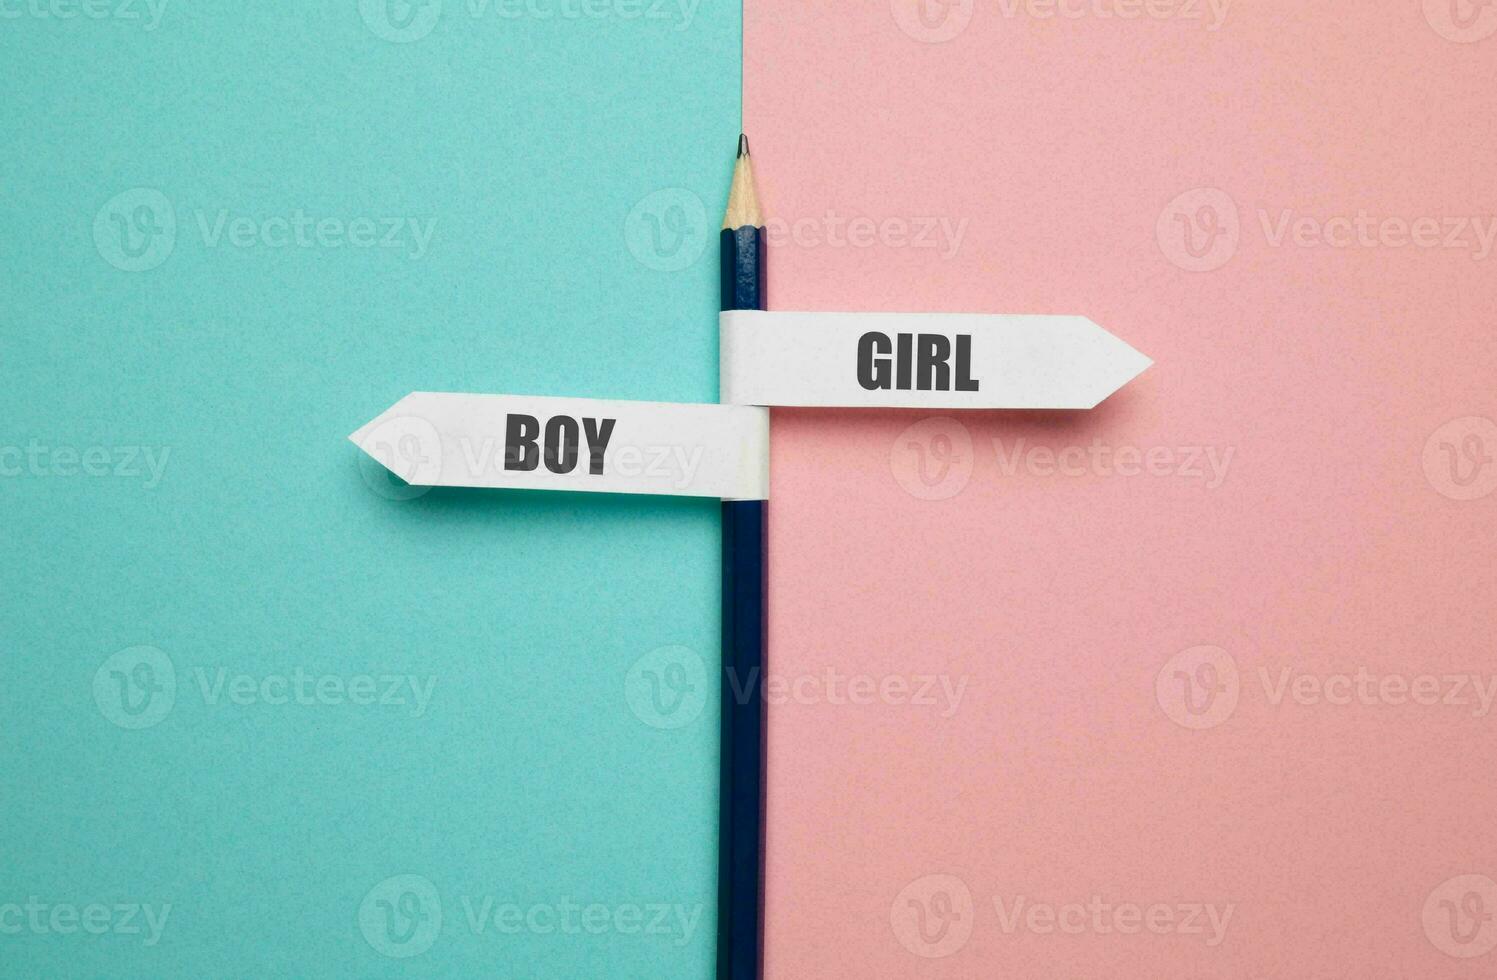 Geschlecht Gleichberechtigung Konzept. männlich und weiblich Symbol auf das Waage mit Balance auf Blau Hintergrund. Mädchen oder Junge minimal Stil, 3d machen. foto